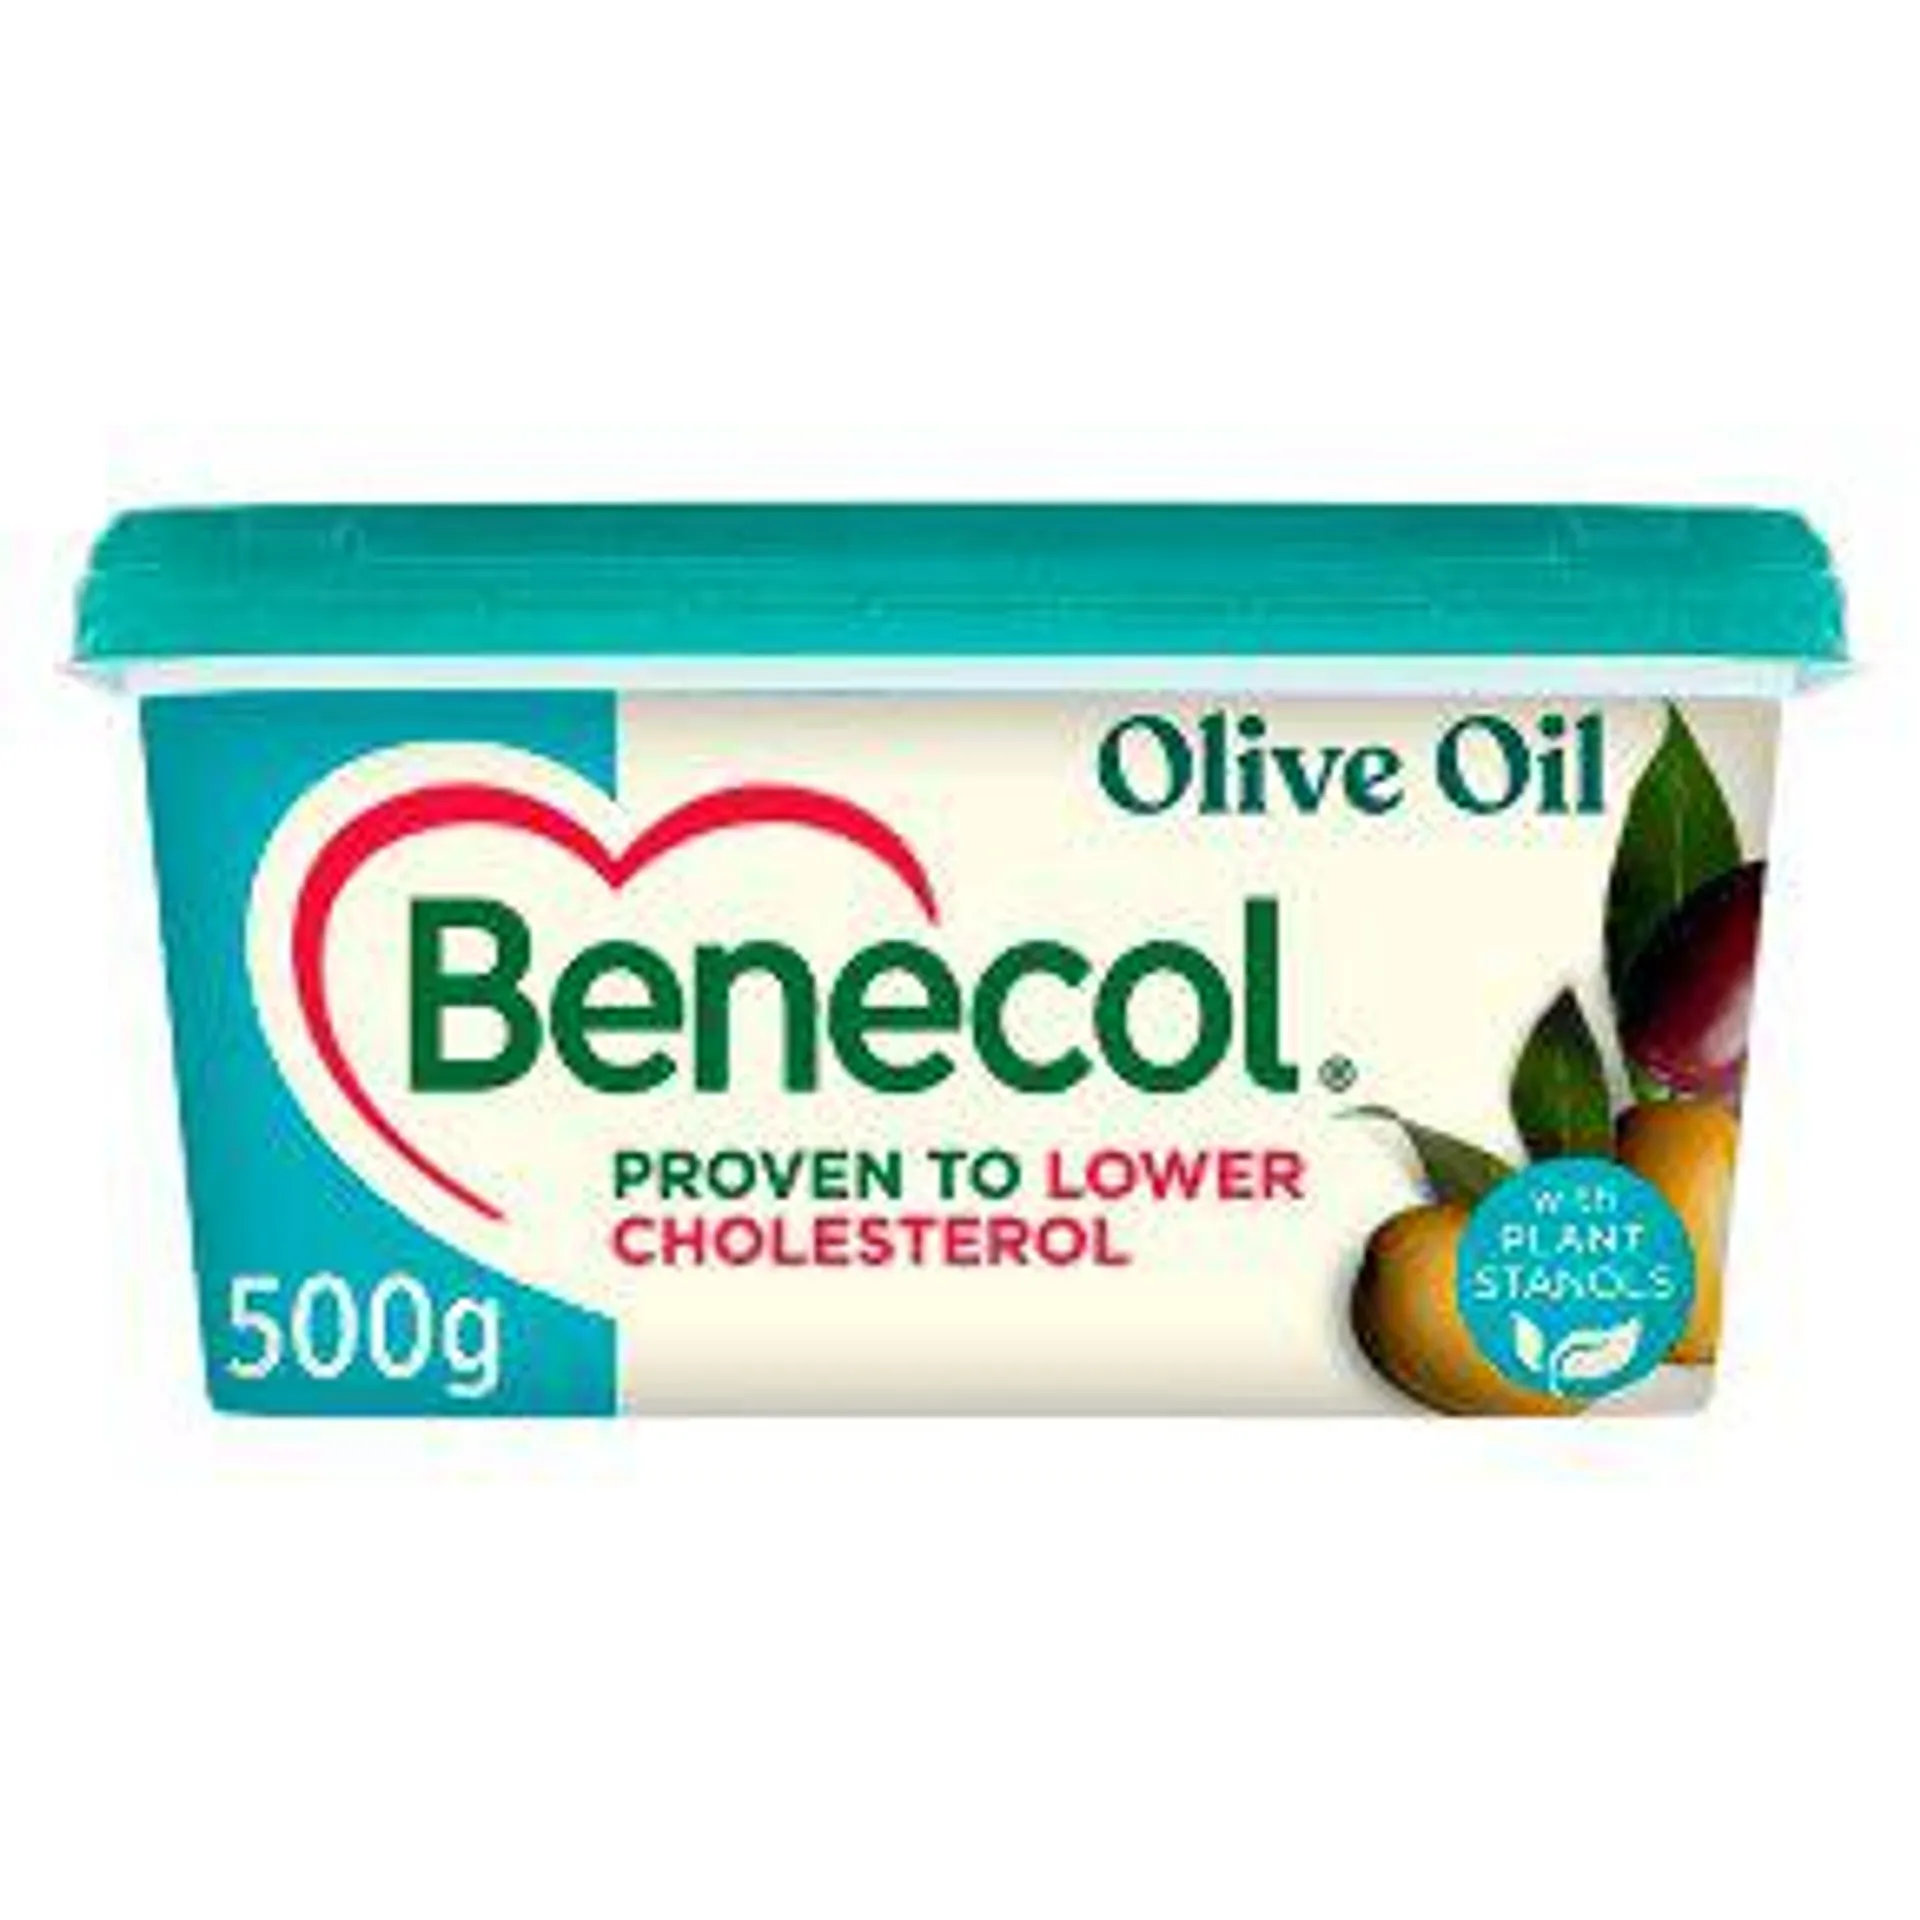 Benecol Olive Oil Spread